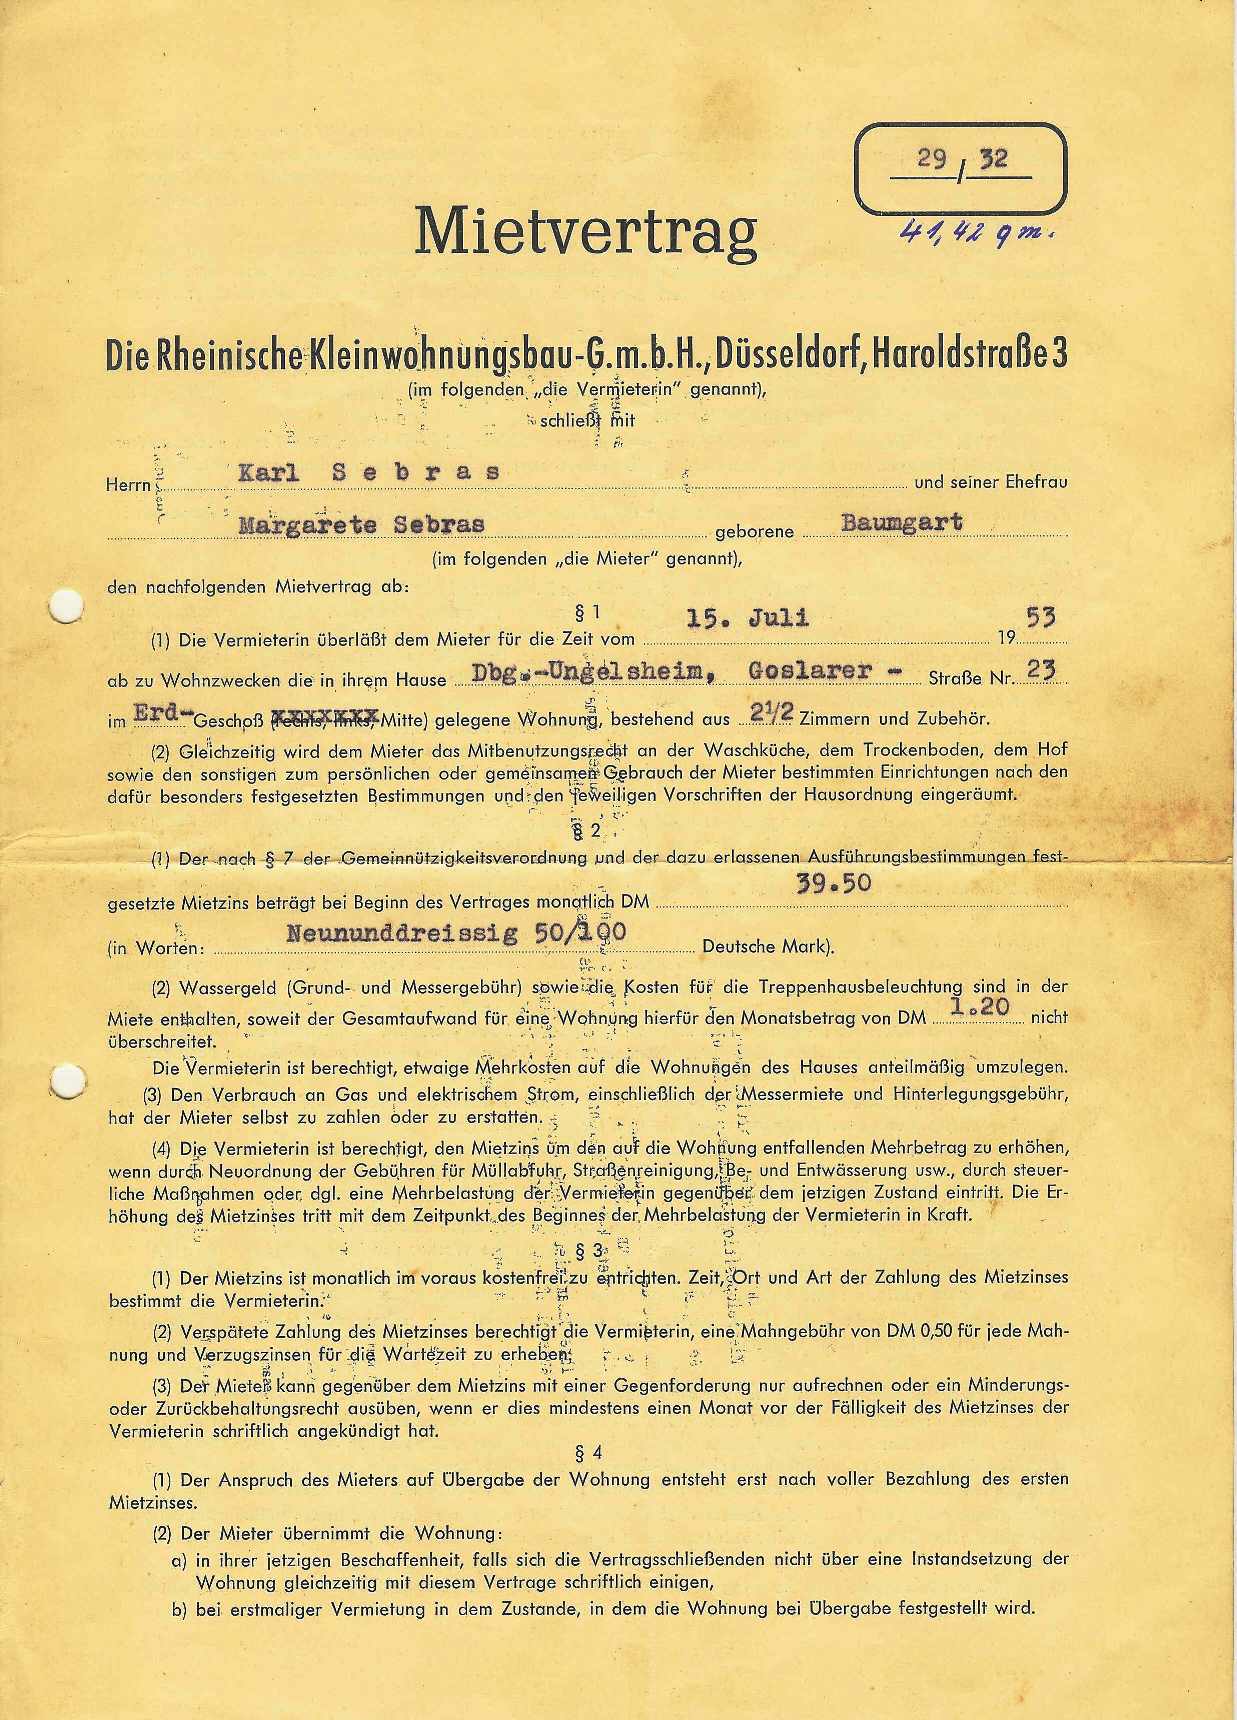 1953 07 15 mietvertrag